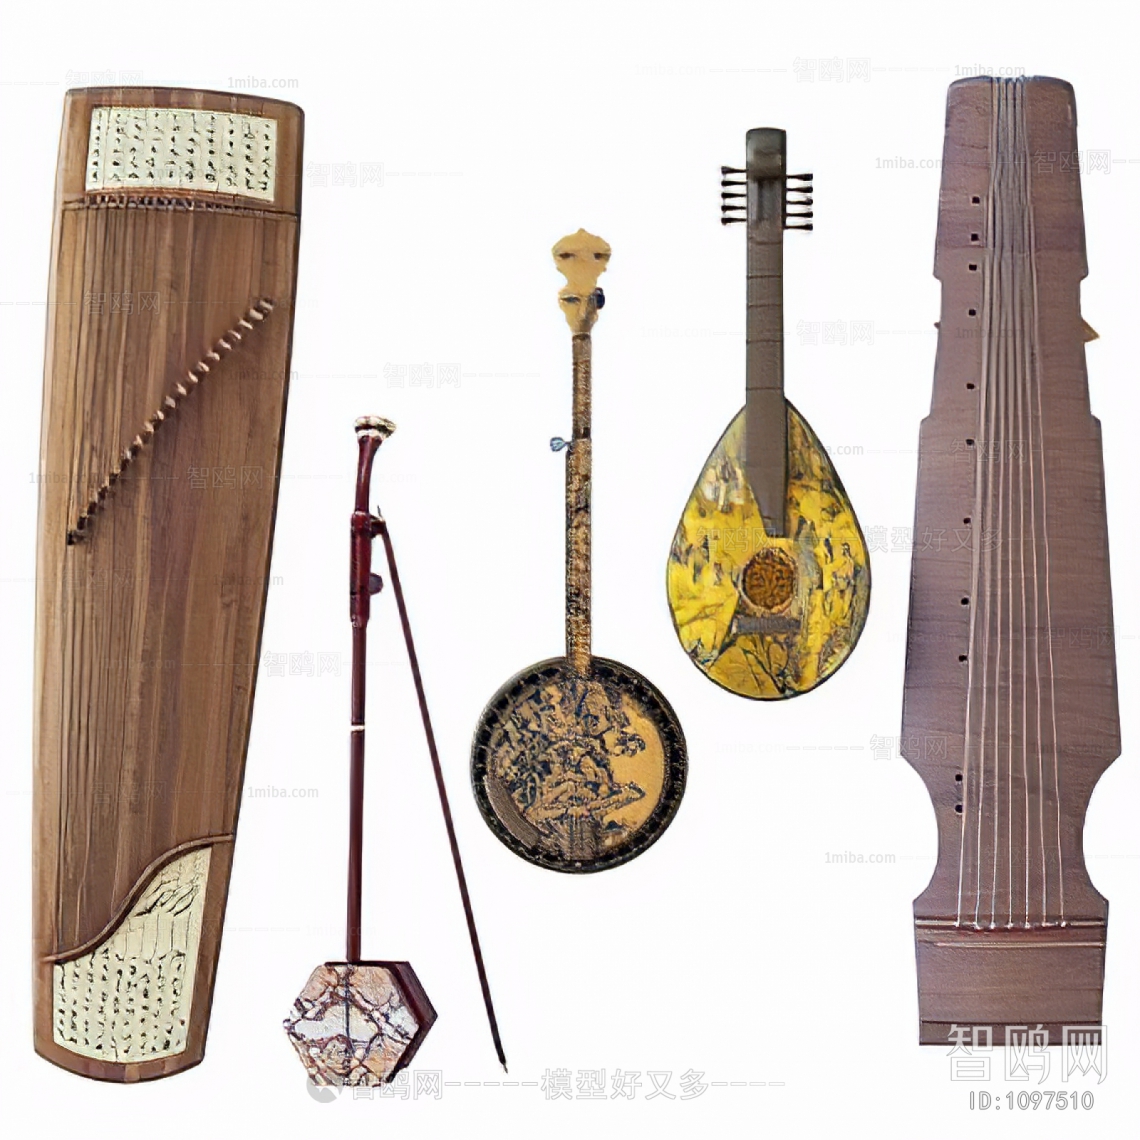 Chinese Style Music Equipment